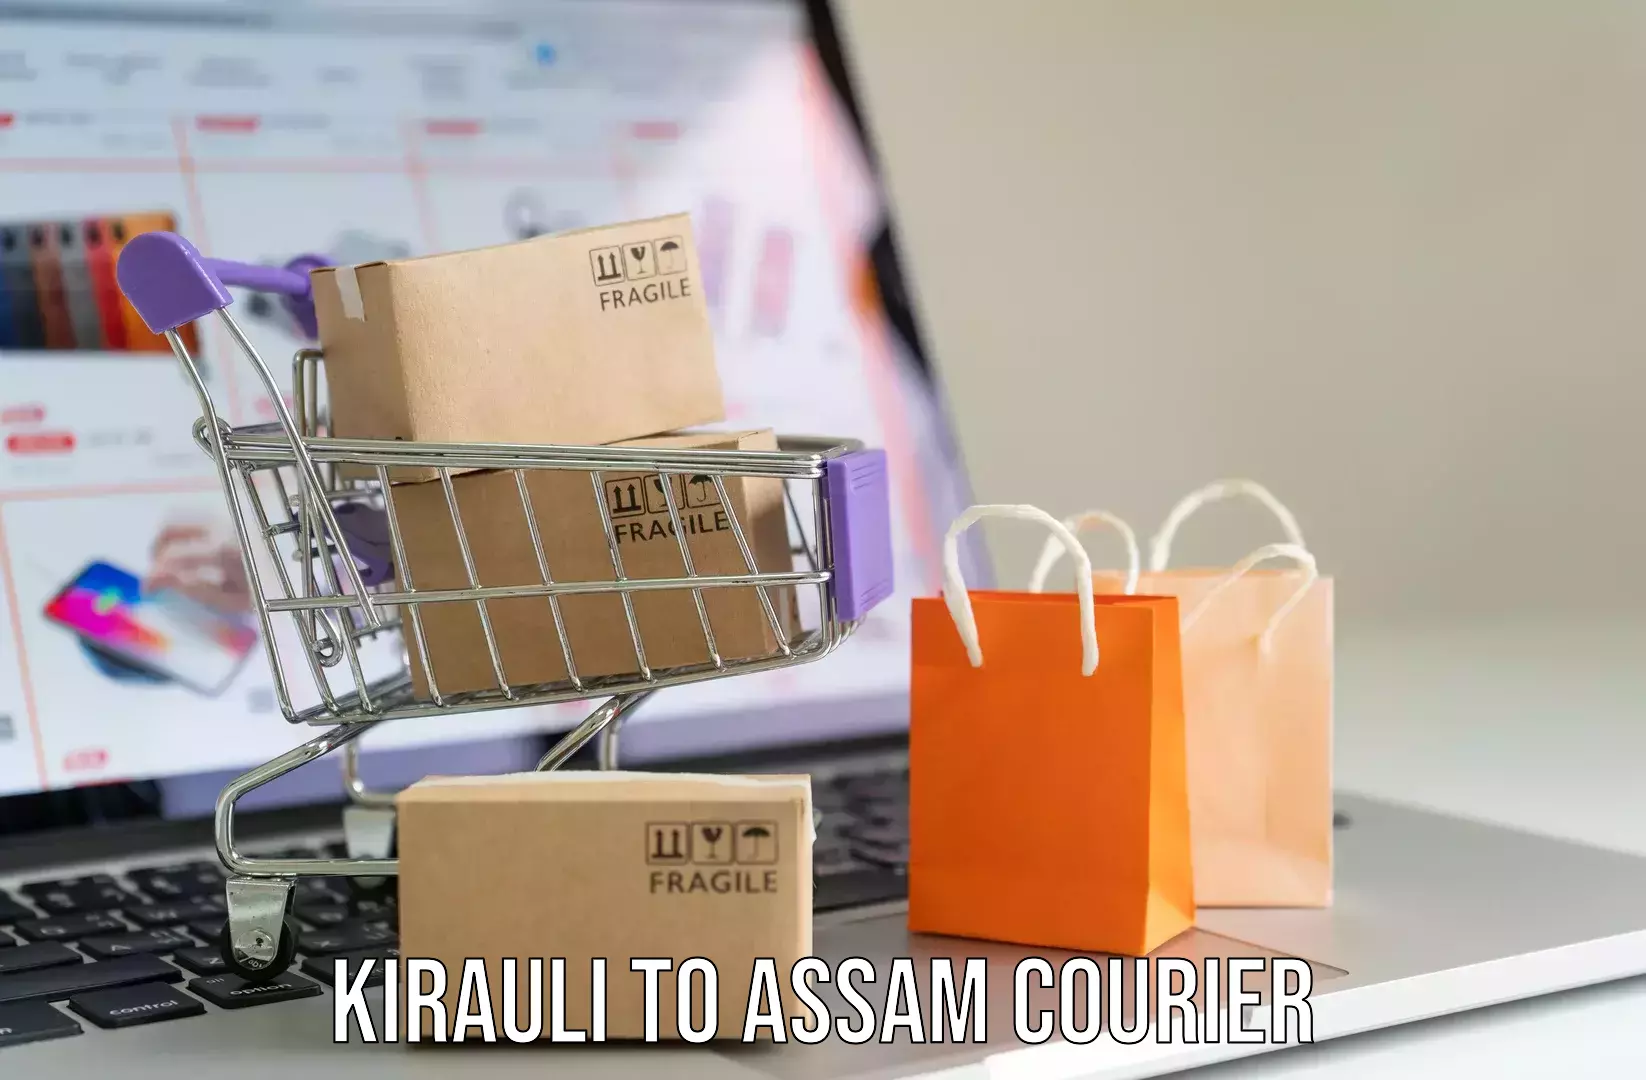 Door-to-door baggage service Kirauli to Lala Assam